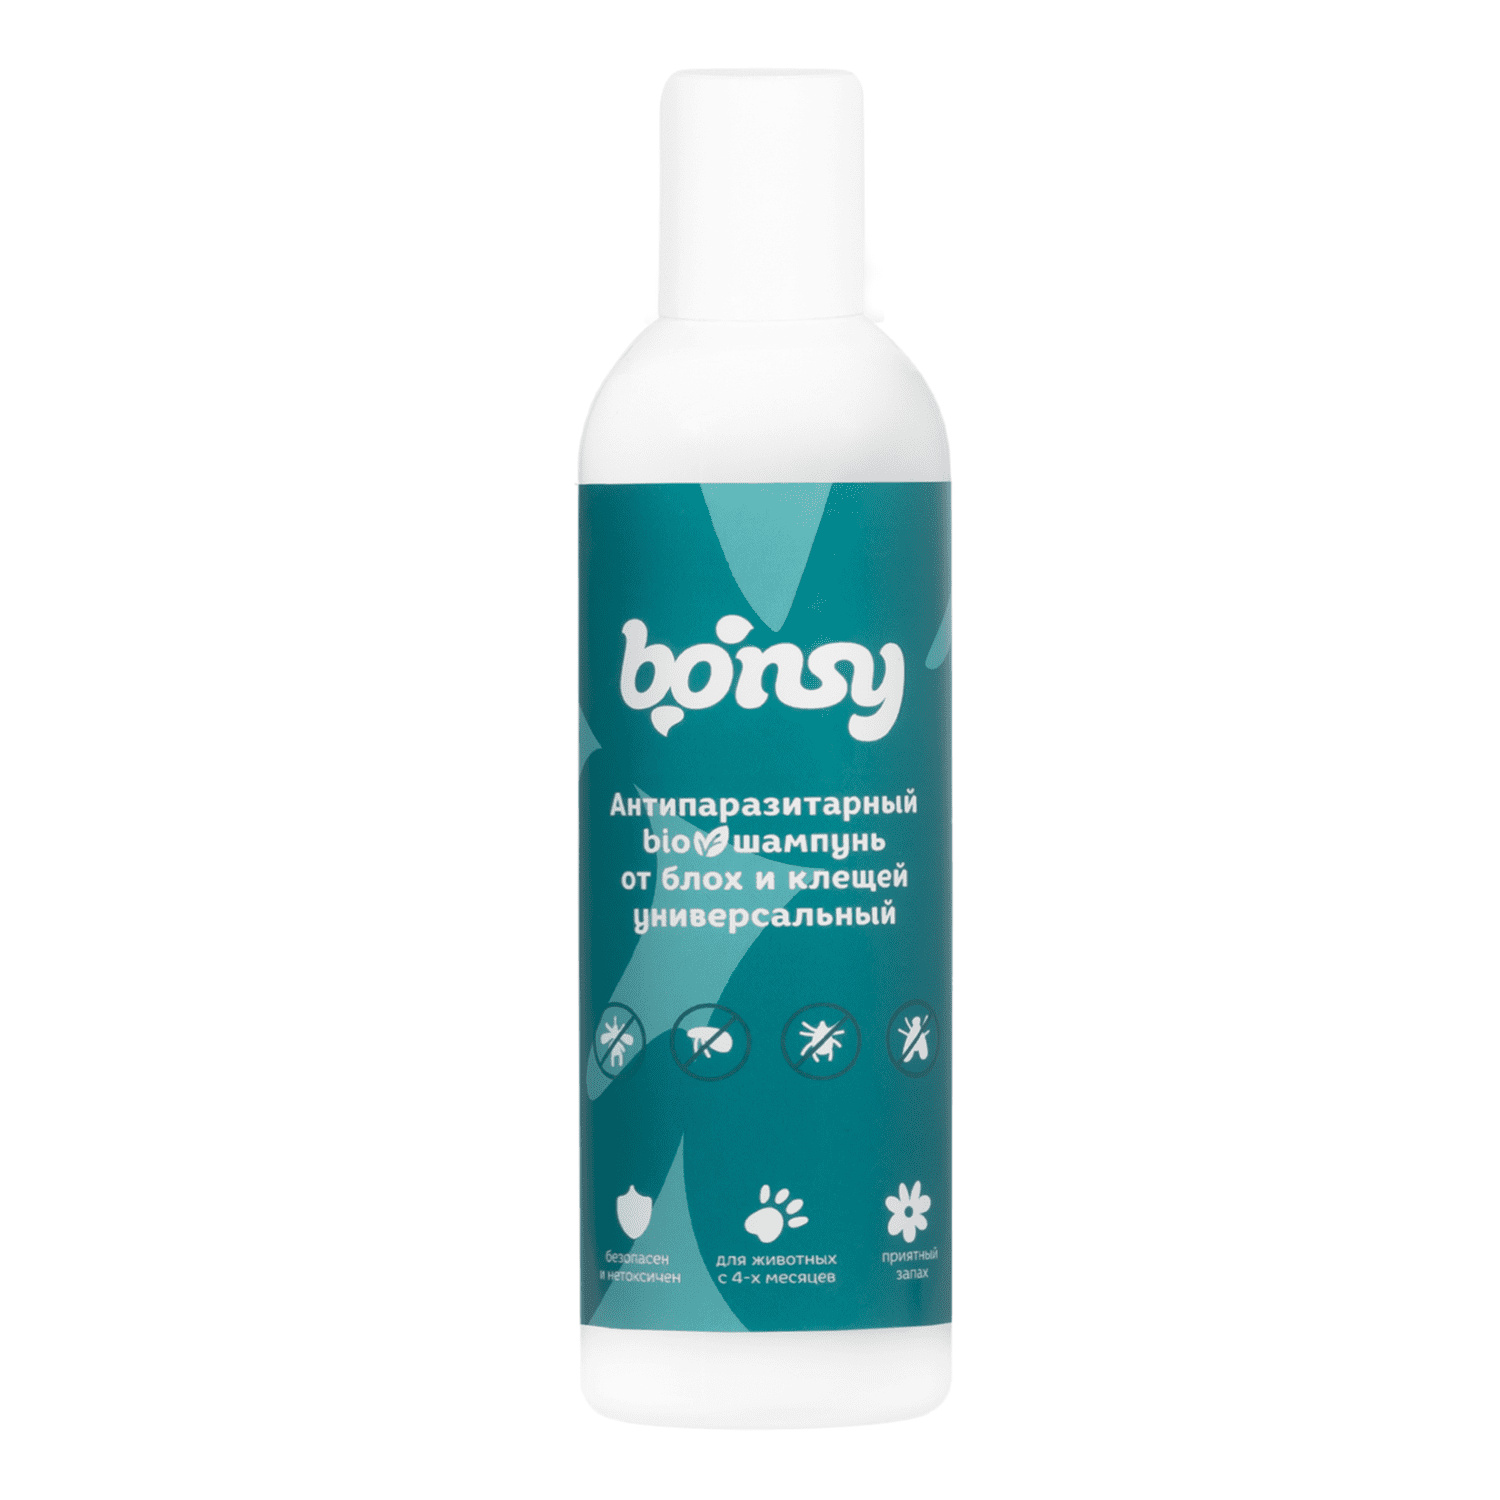 Bonsy Bonsy антипаразитарный БИОшампунь от блох и клещей, универсальный (500 г) bonsy bonsy антипаразитарный биоспрей для обработки котят и кошек 150 г